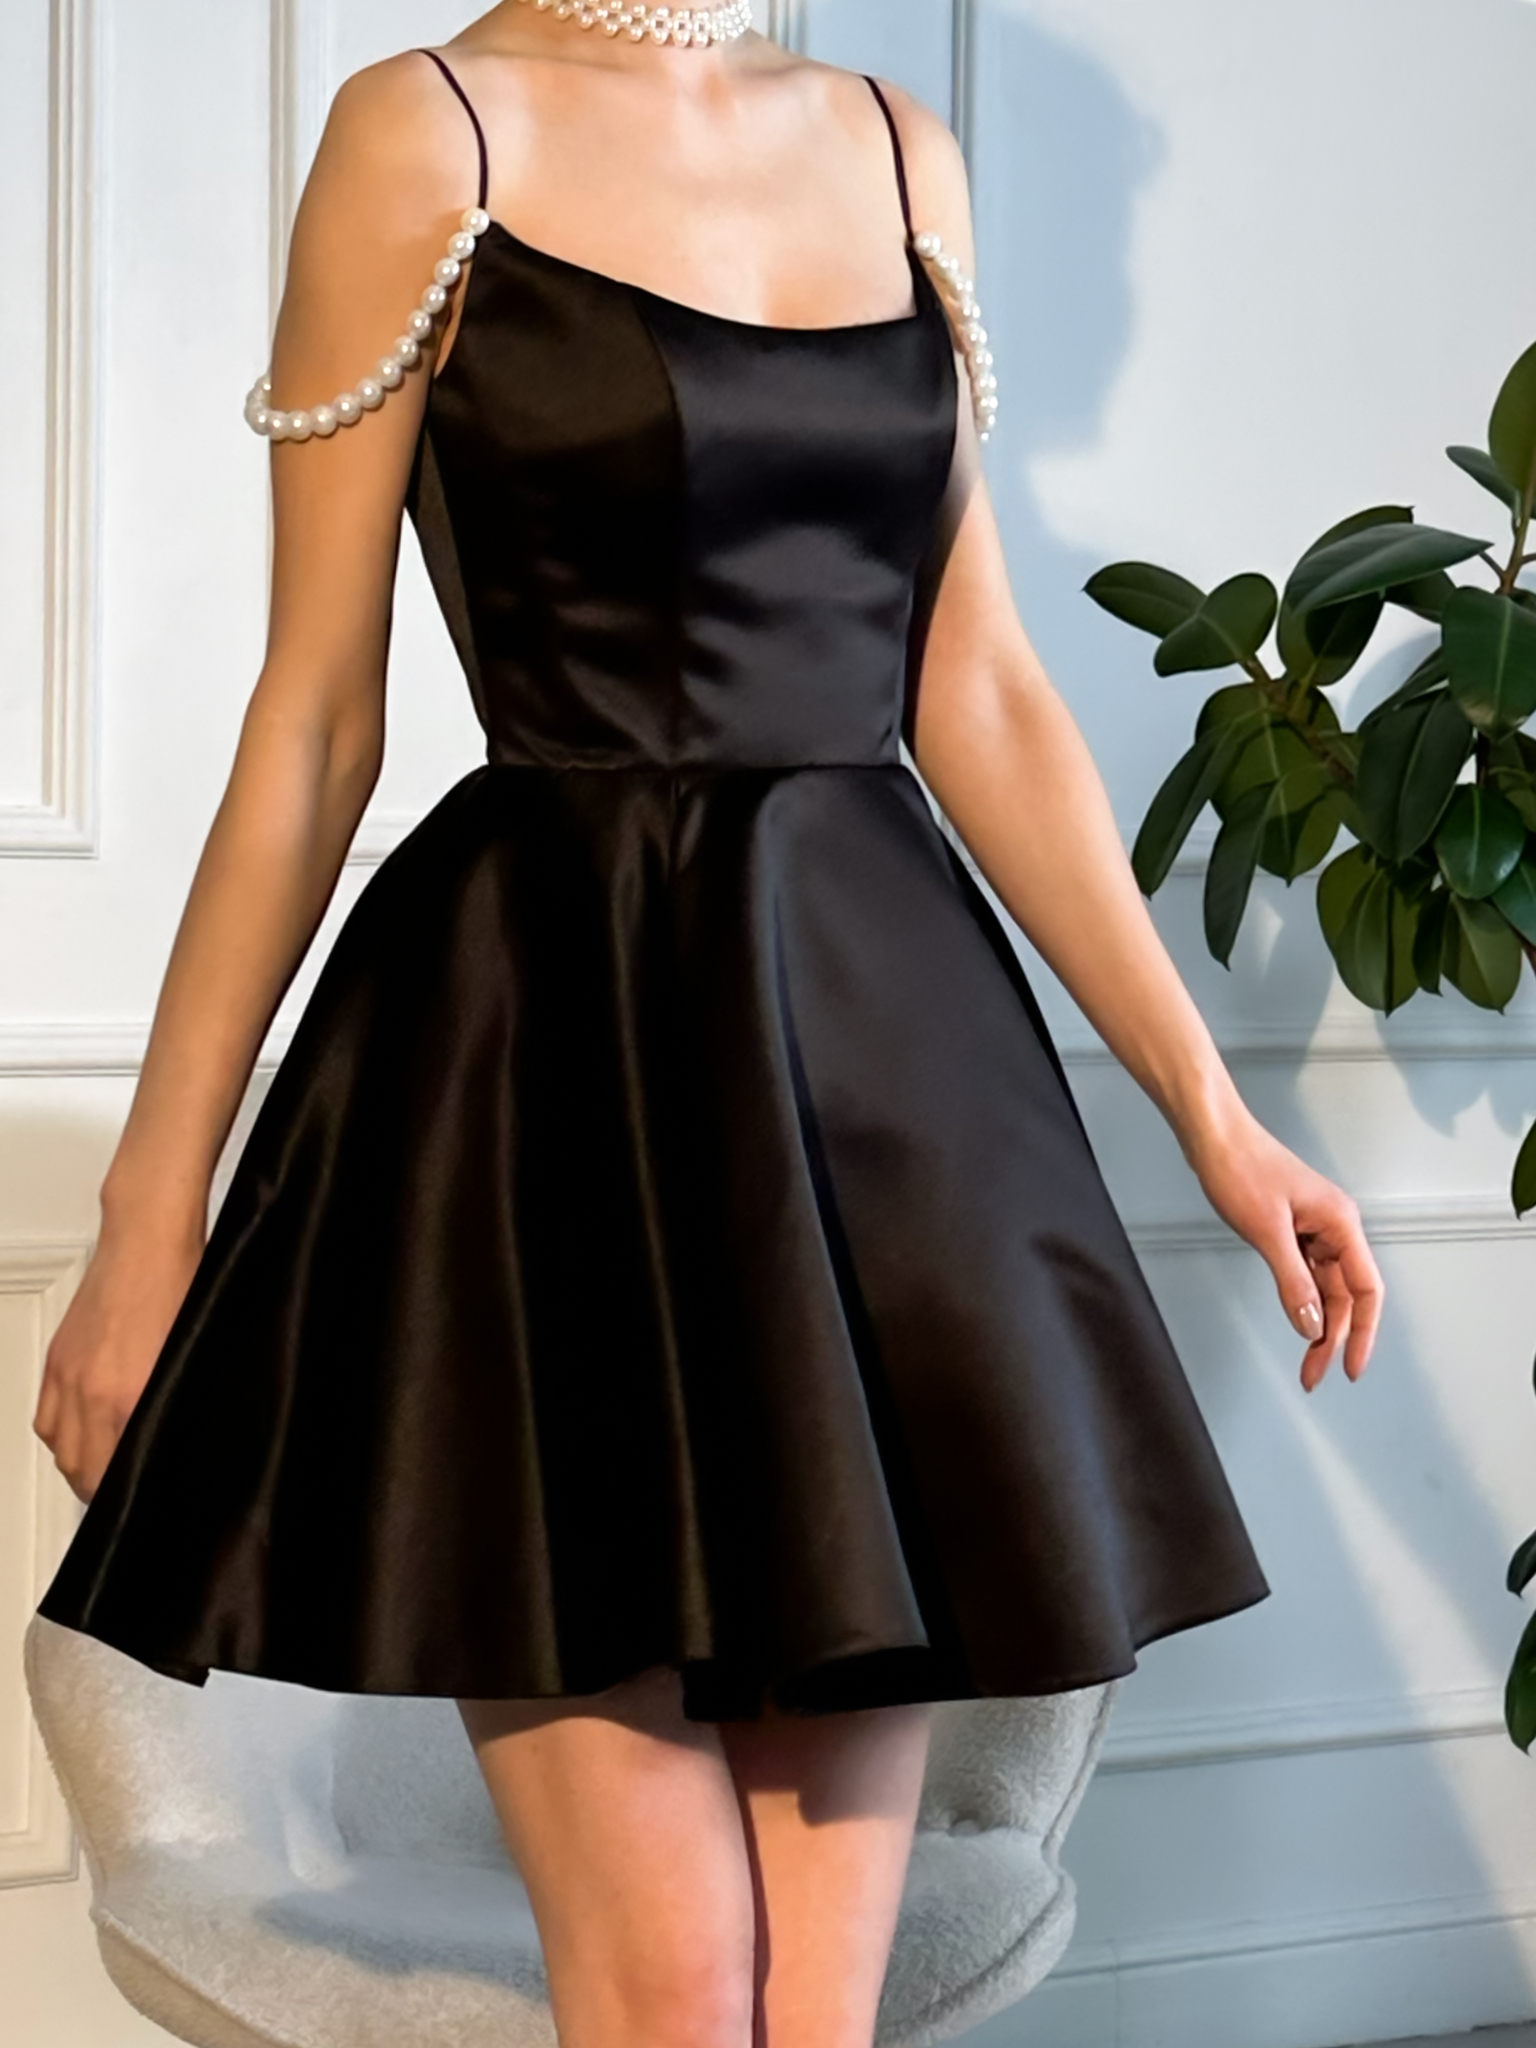 Чёрное платье для выпускного, Нижний Новгород, купить в салоне Инфанта